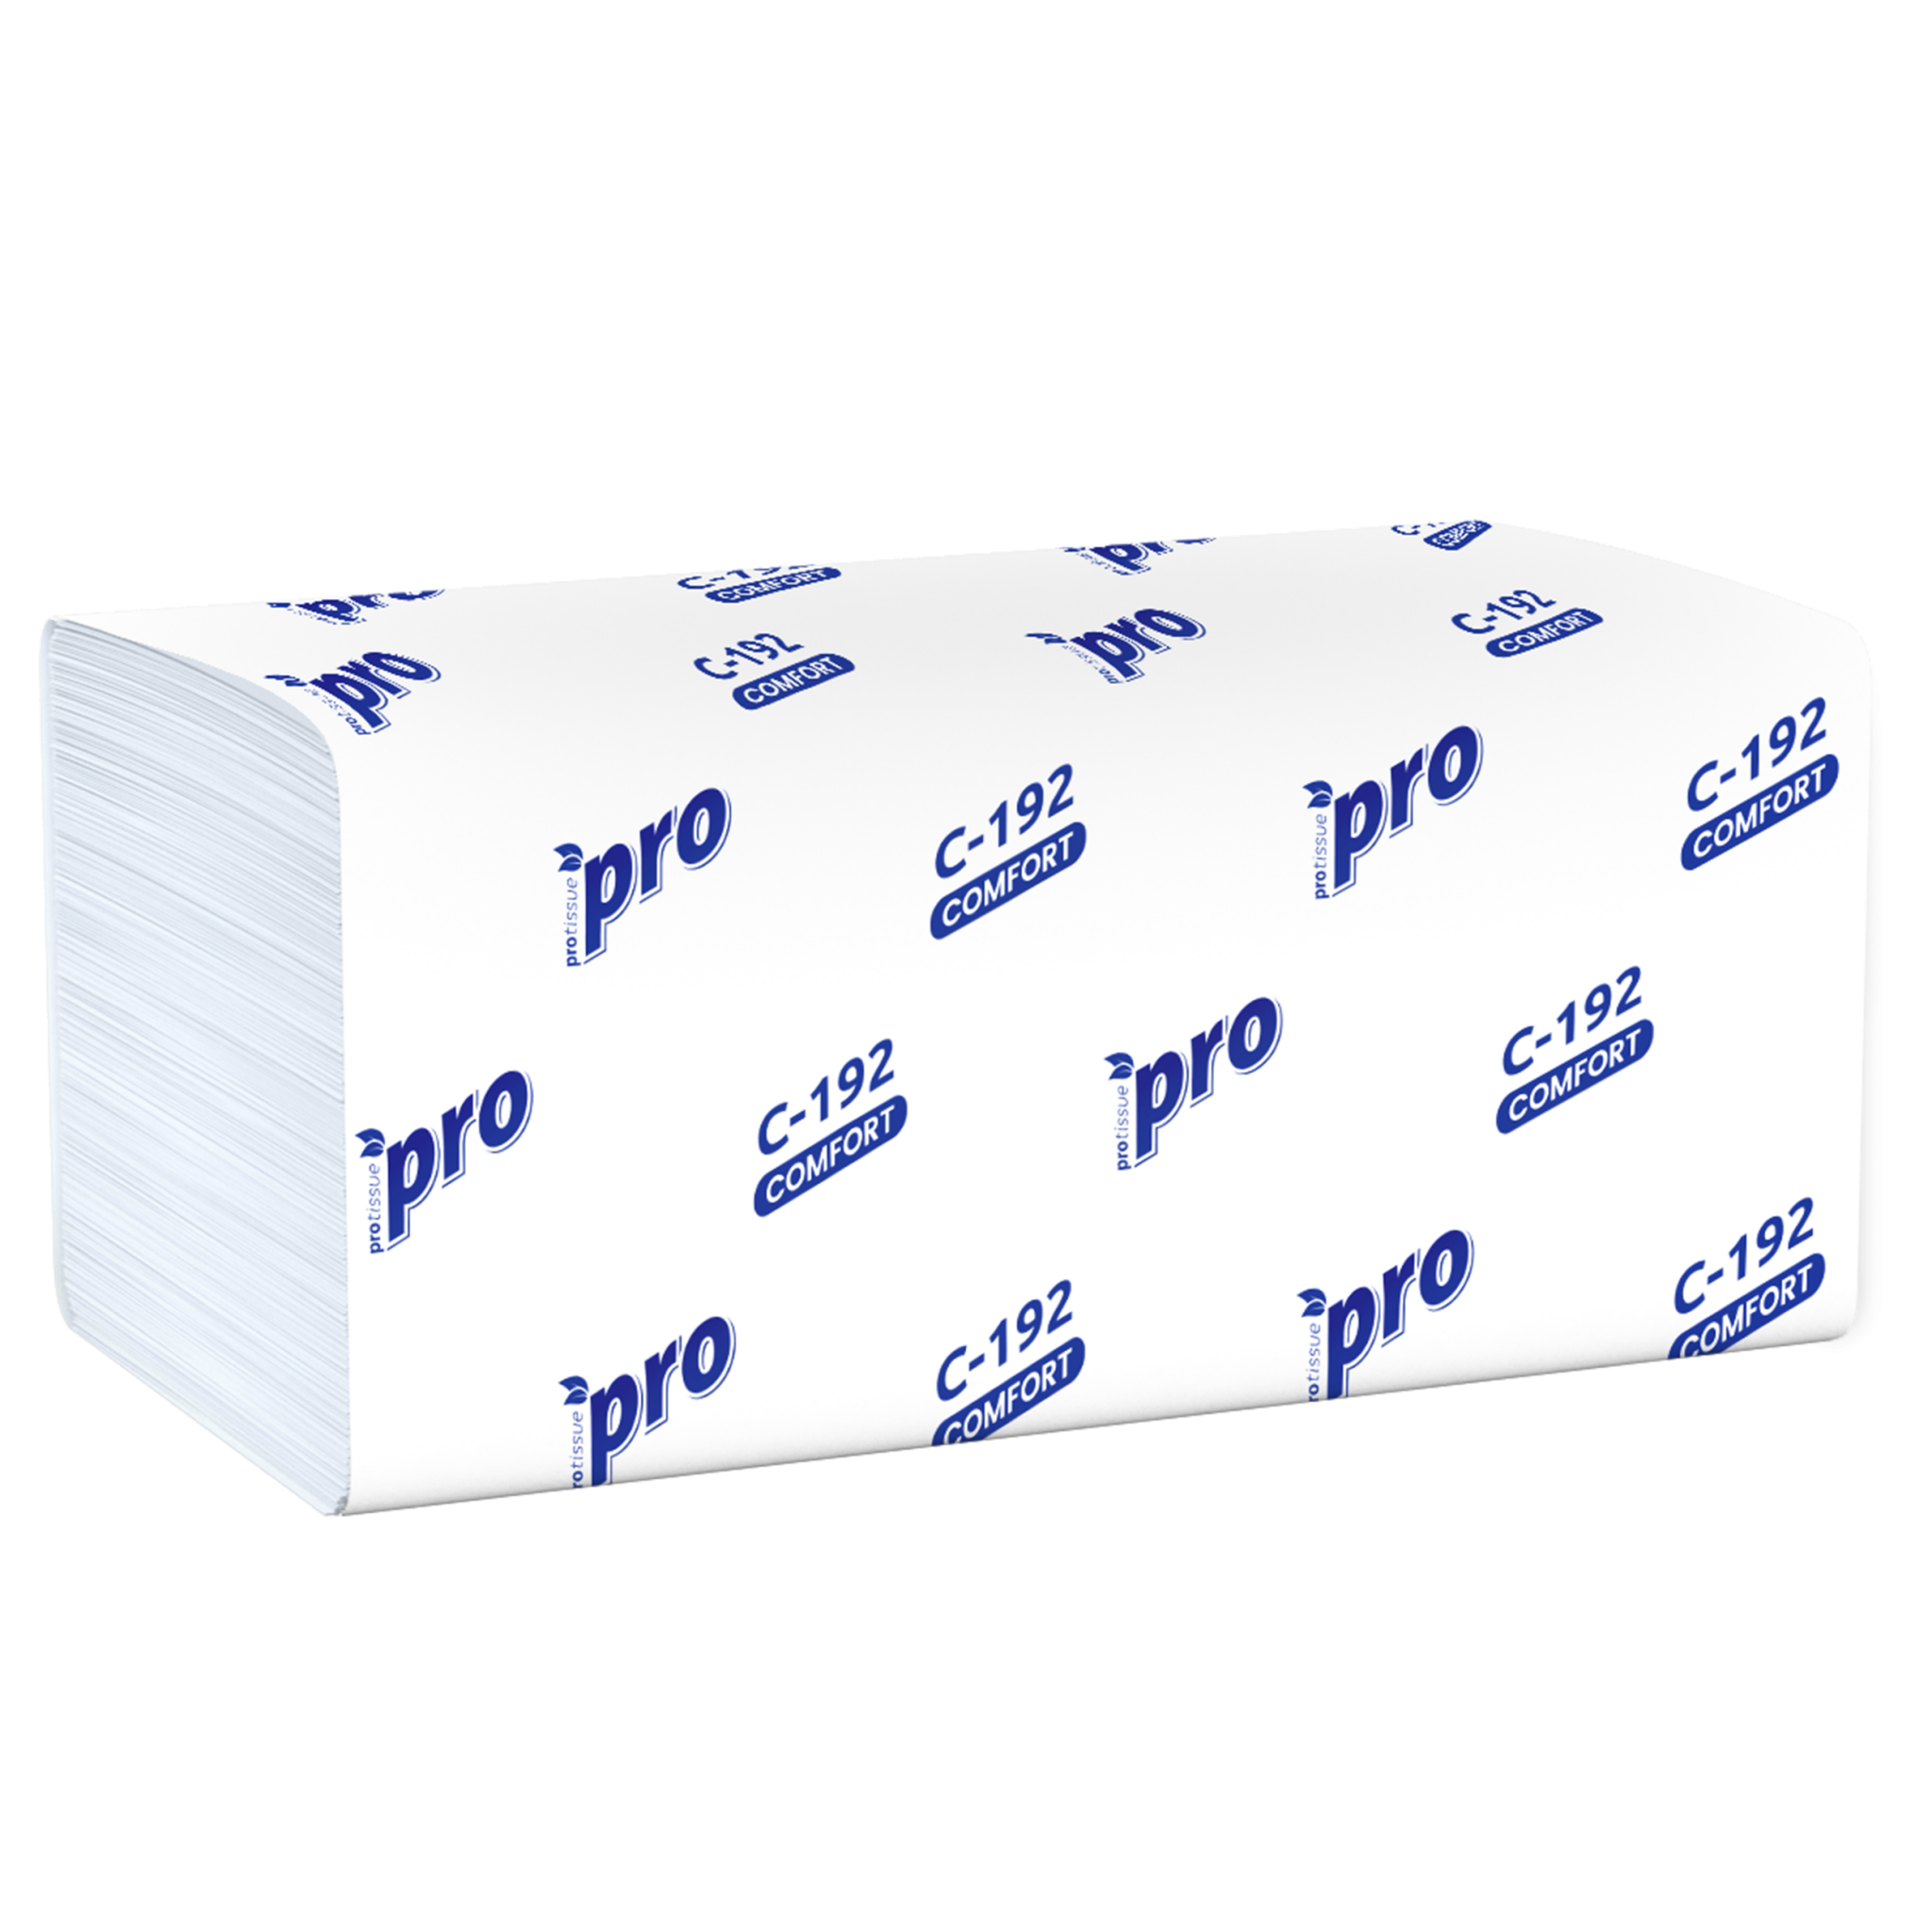 Полотенца бумажные Focus Premium v-сложения белые двухслойные 5049974. Бумажные полотенца protissue двухслойные 20 шт. Полотенца бумажные листовые protissue v-сложения (ZZ) 2х-сл, 200 листов, белые. Полотенца листовые v сложения 1сл.21х24 200л Belux. Купить бумажные полотенца оптом